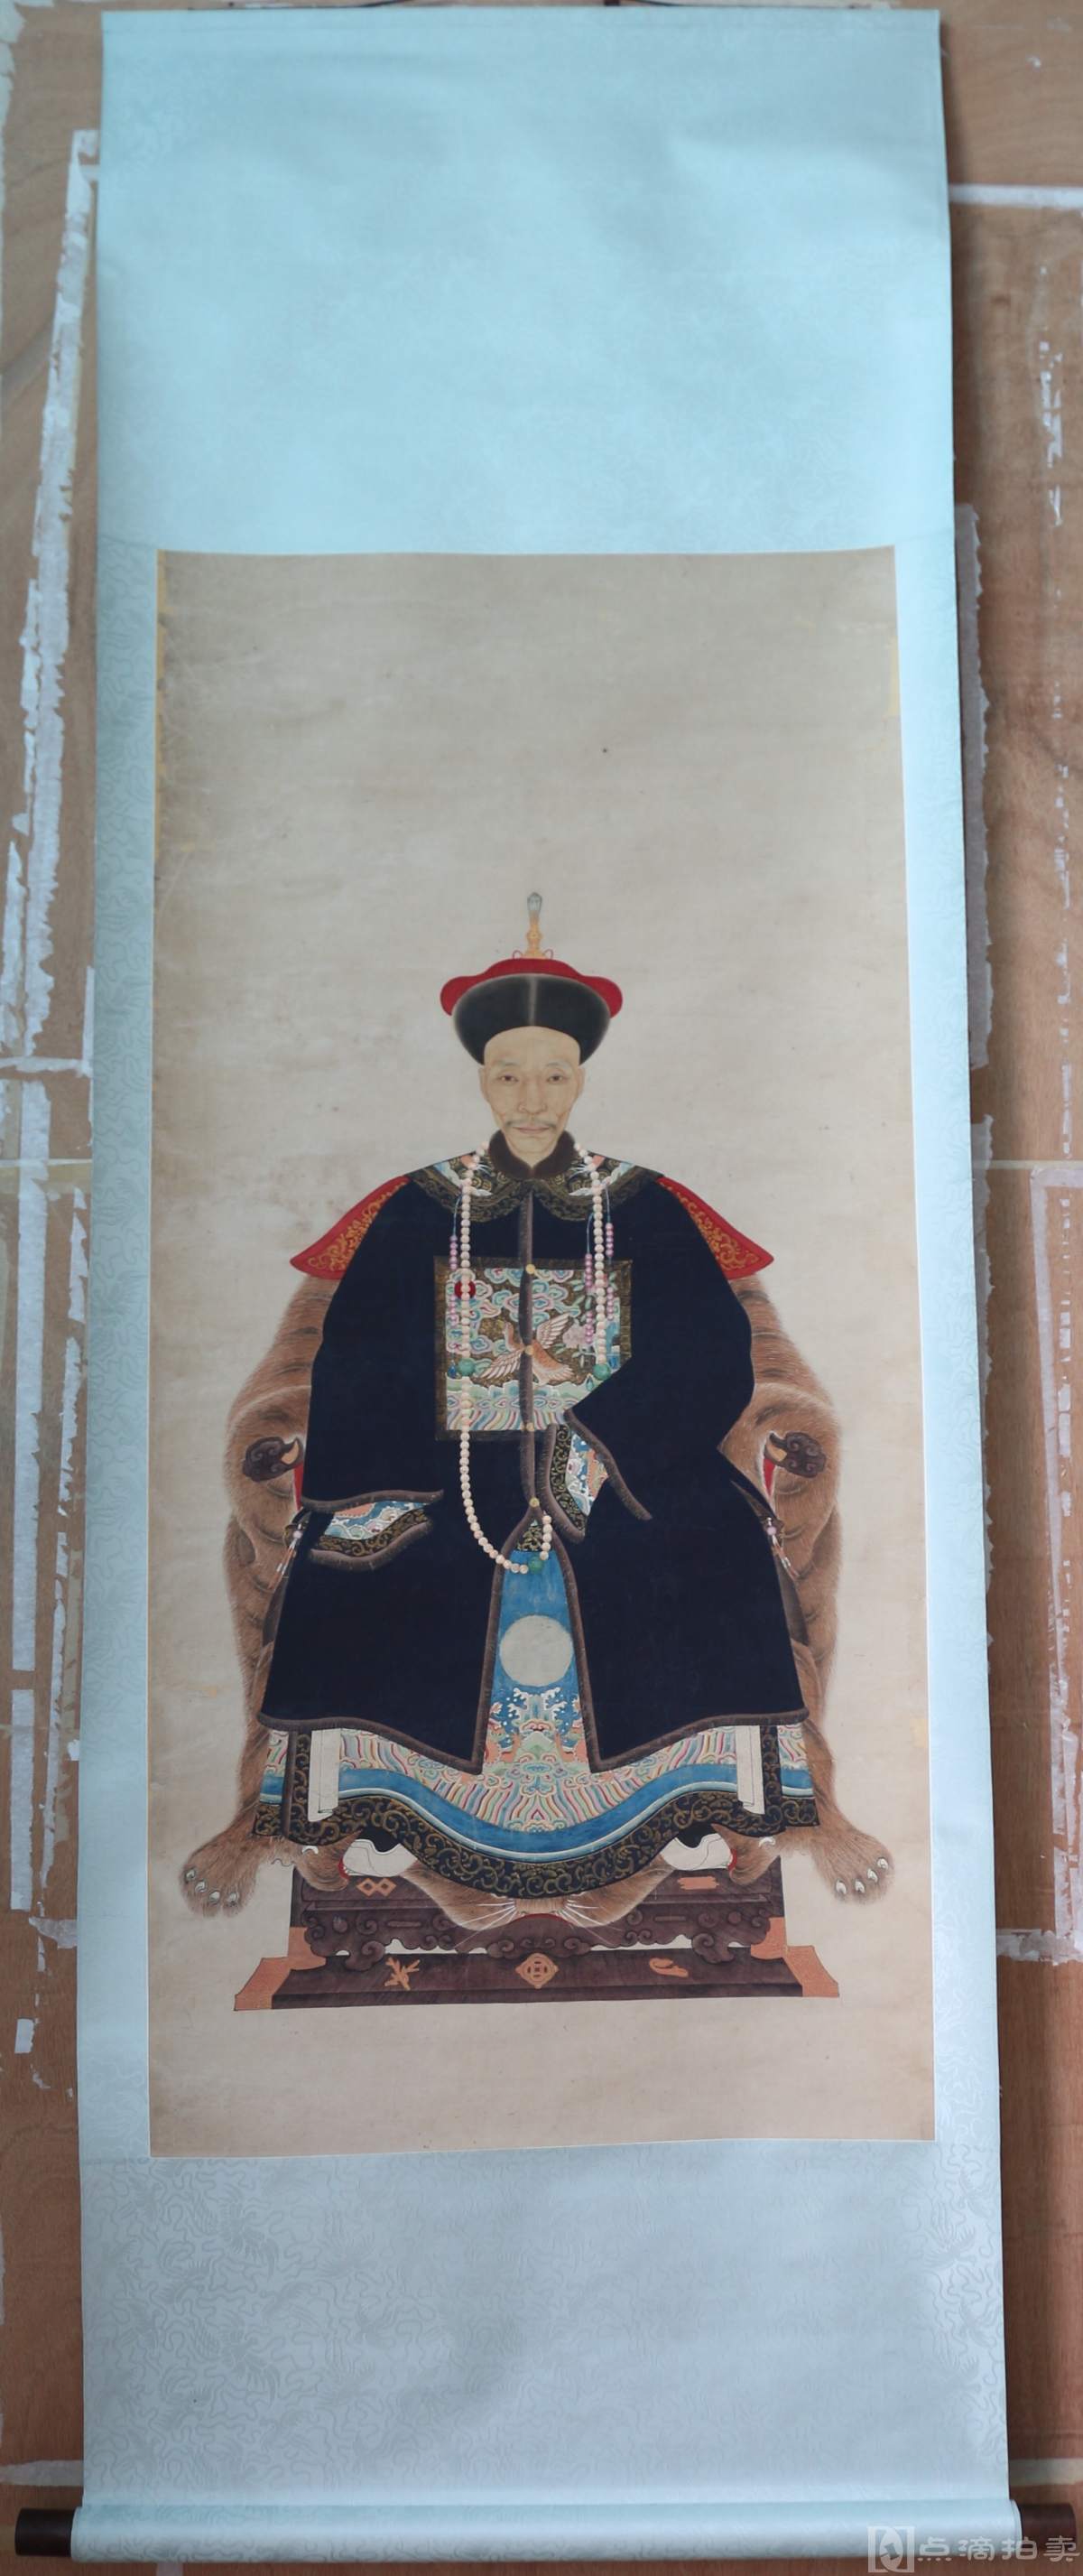 清朝官员画像图片